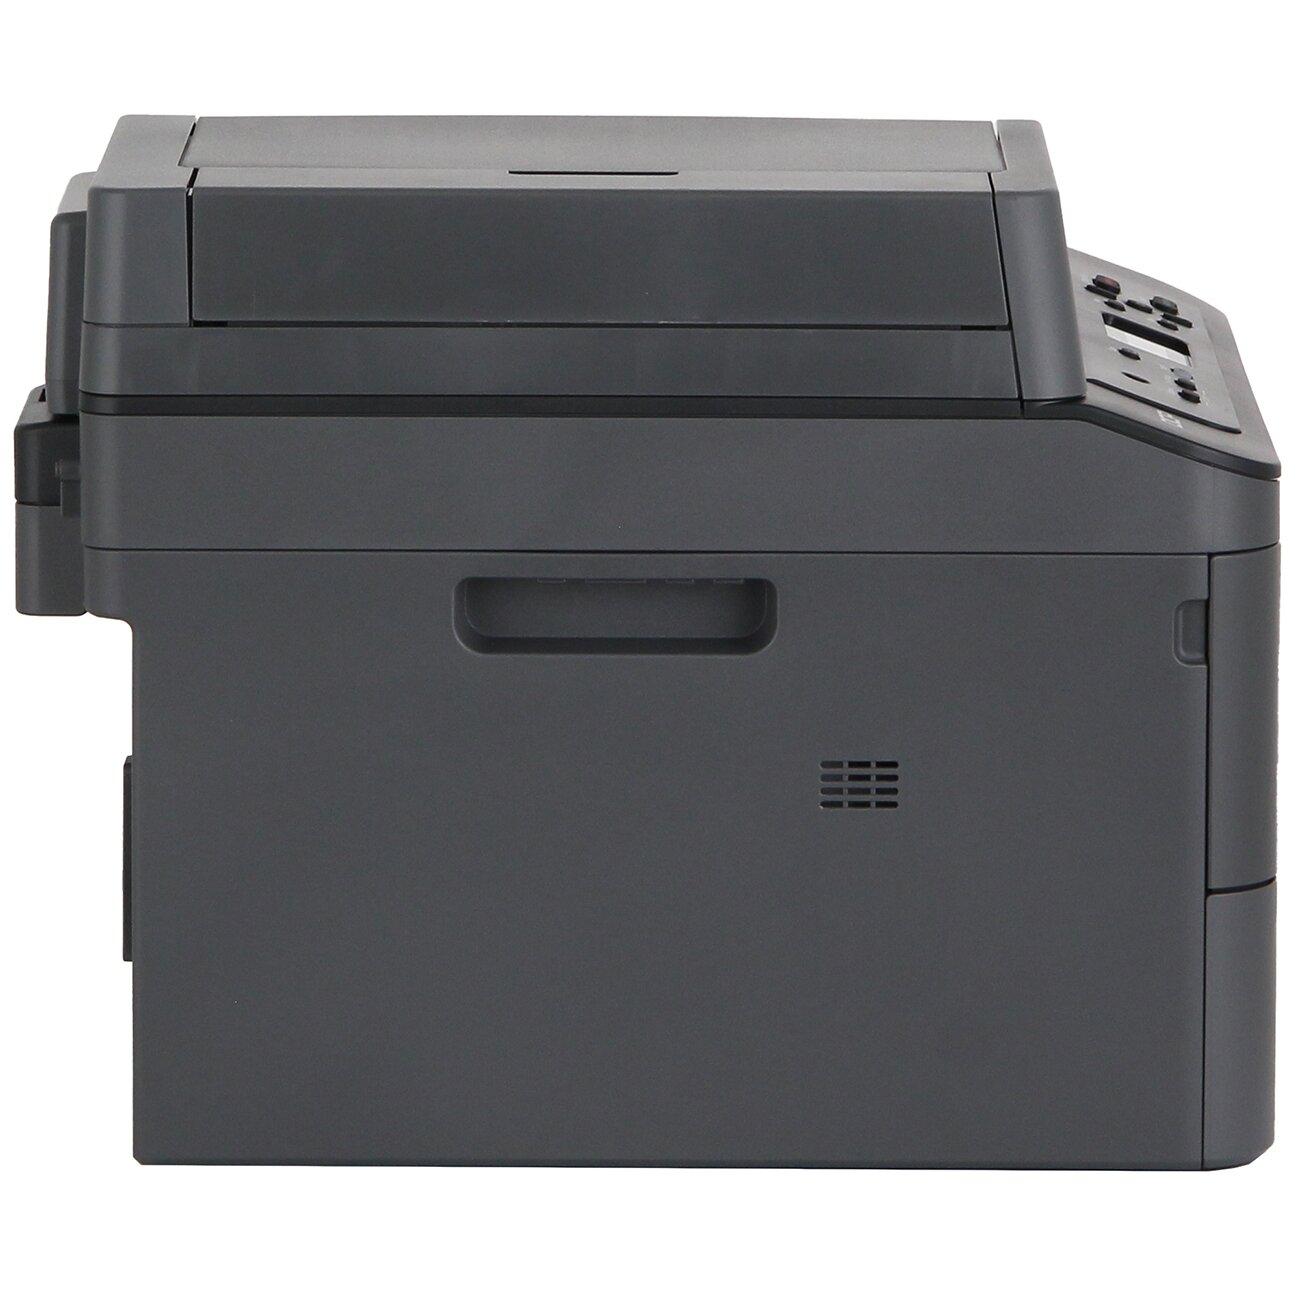 МФУ Brother DCP-L2540DW Лазерный принтер двусторонняя печать автоподатчик цветной сканер WI-fi вай фай русский язык